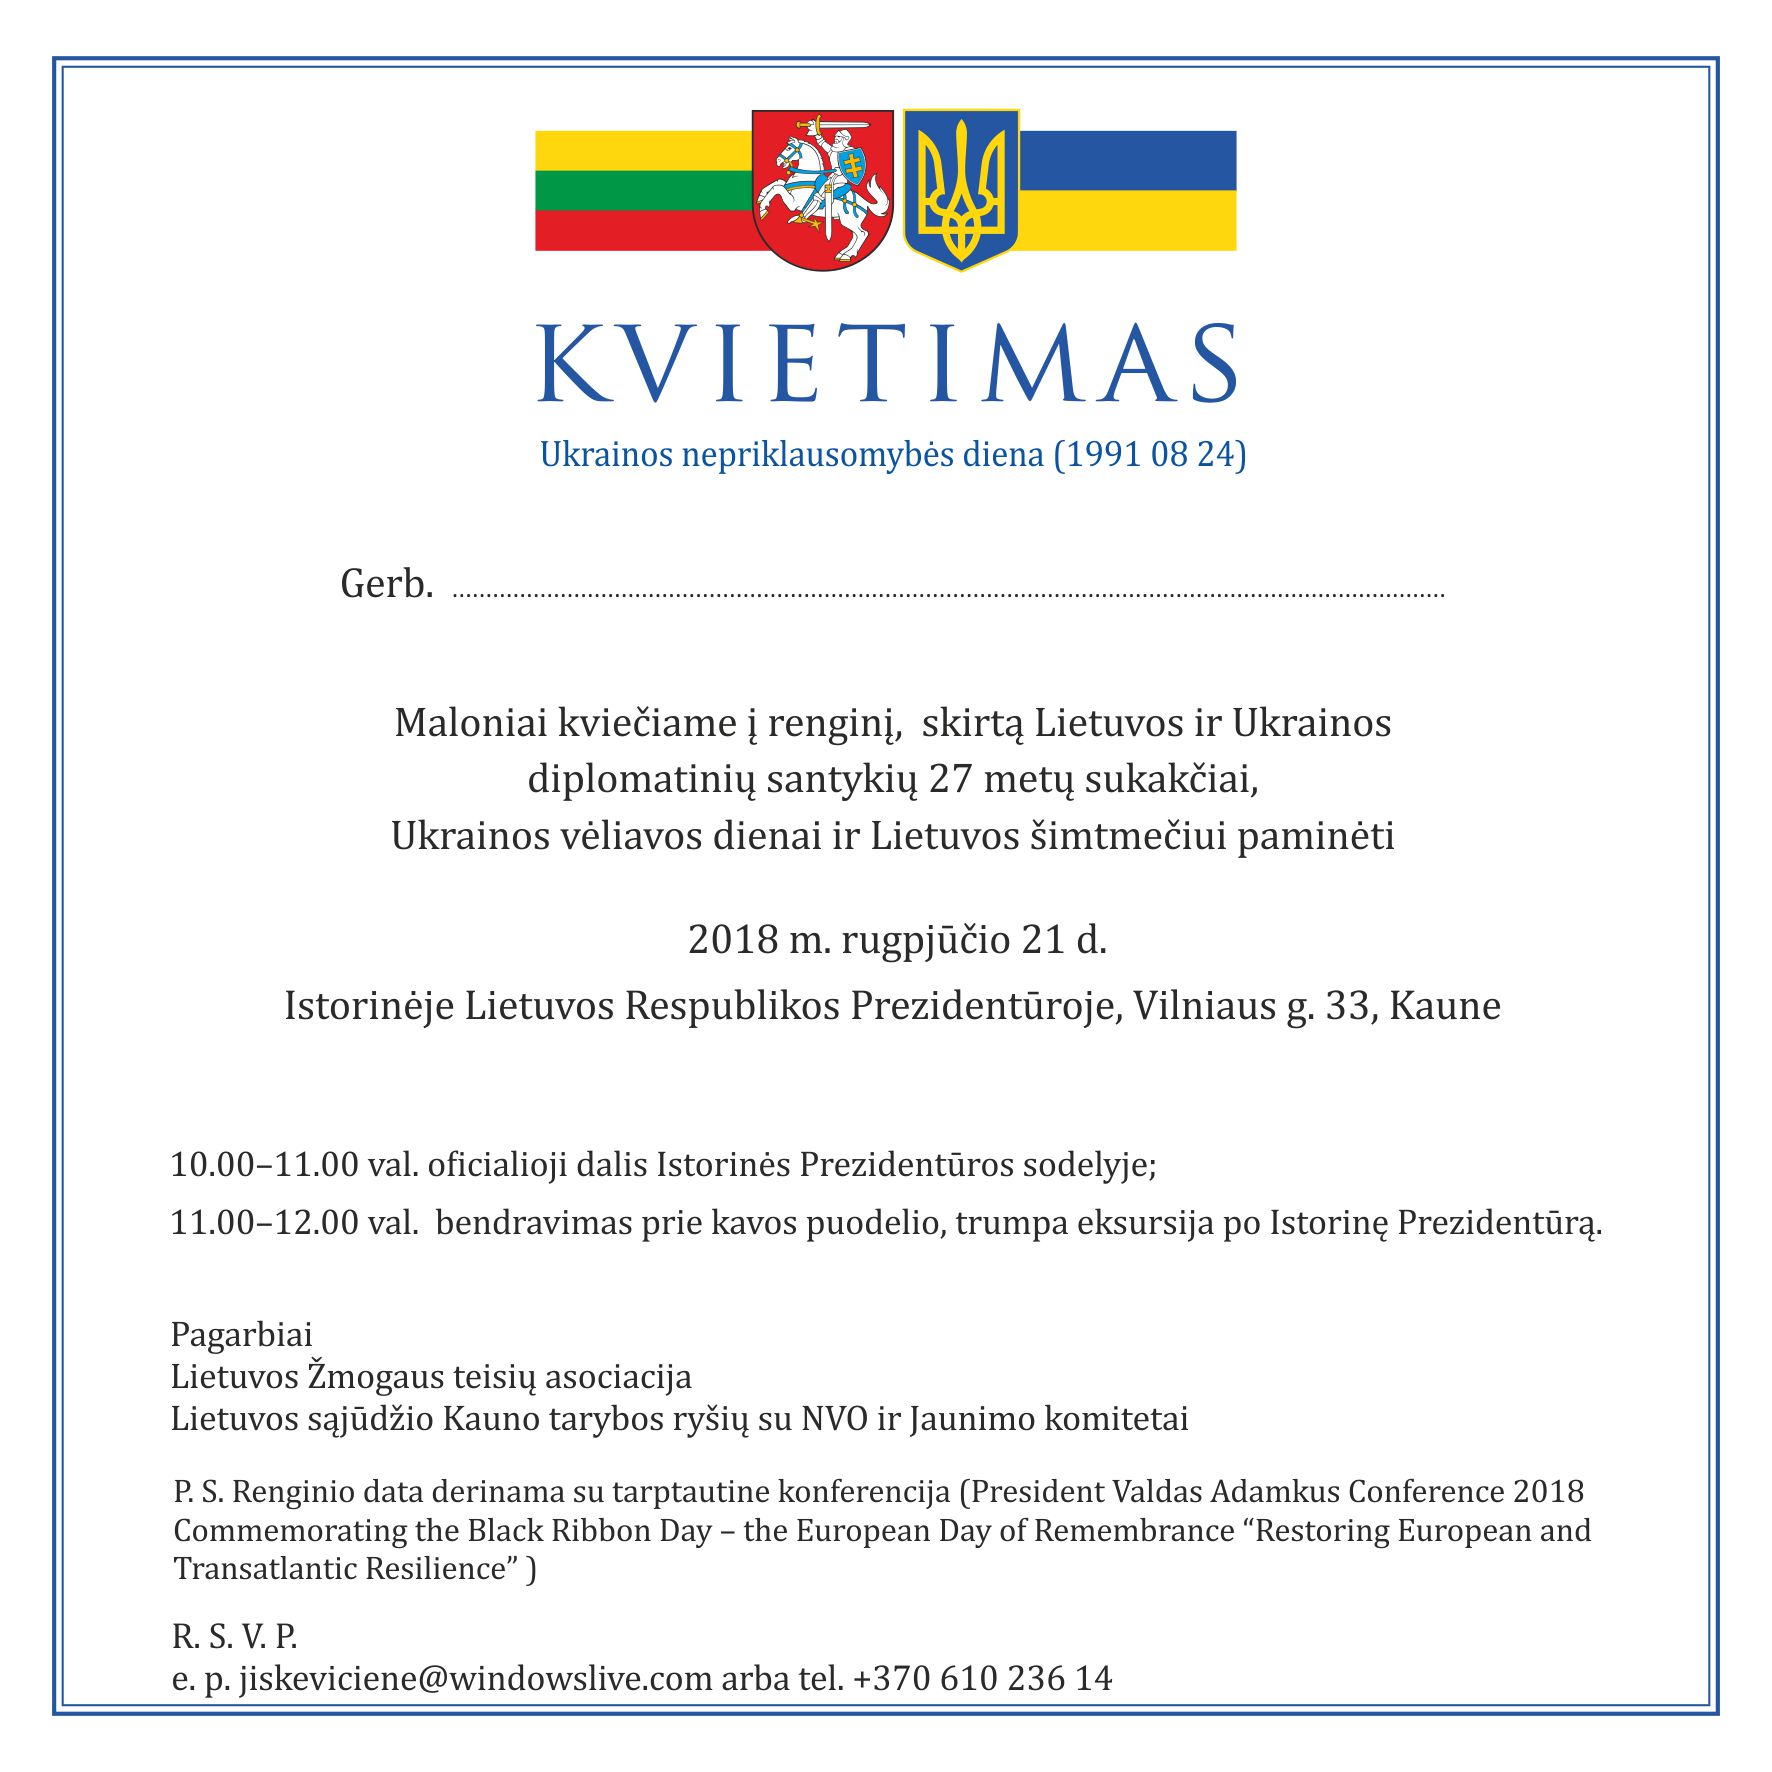  Ukrainos Nepriklausomybės dienos minėjimas Kaune 